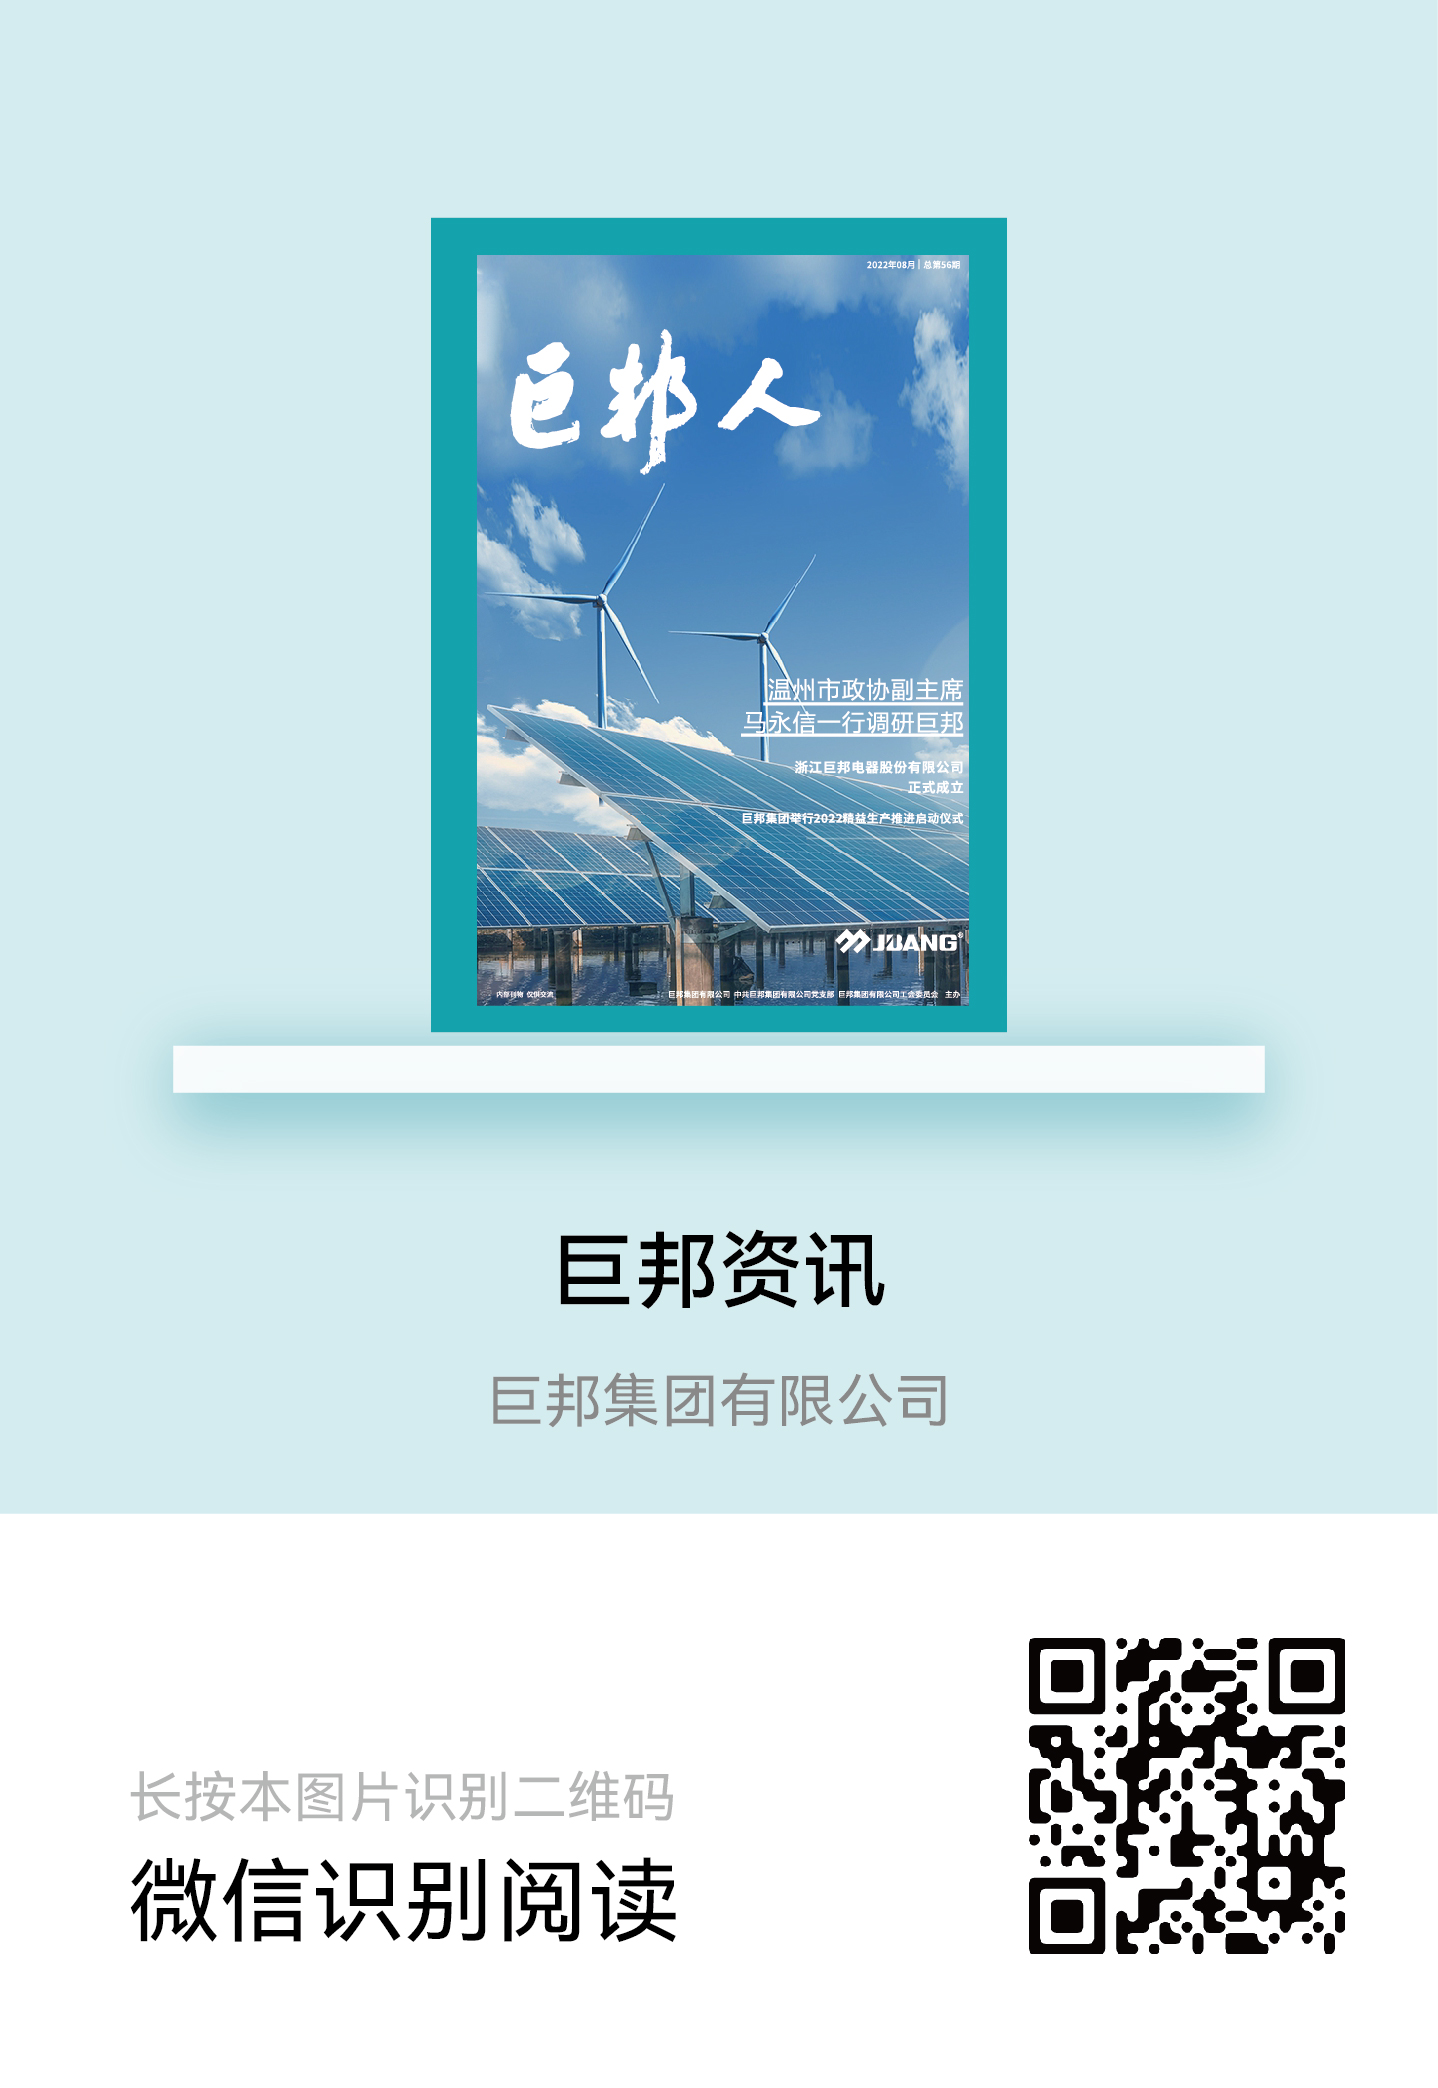 海洋之神首页|(中国)股份有限公司-baidu百科_产品9803